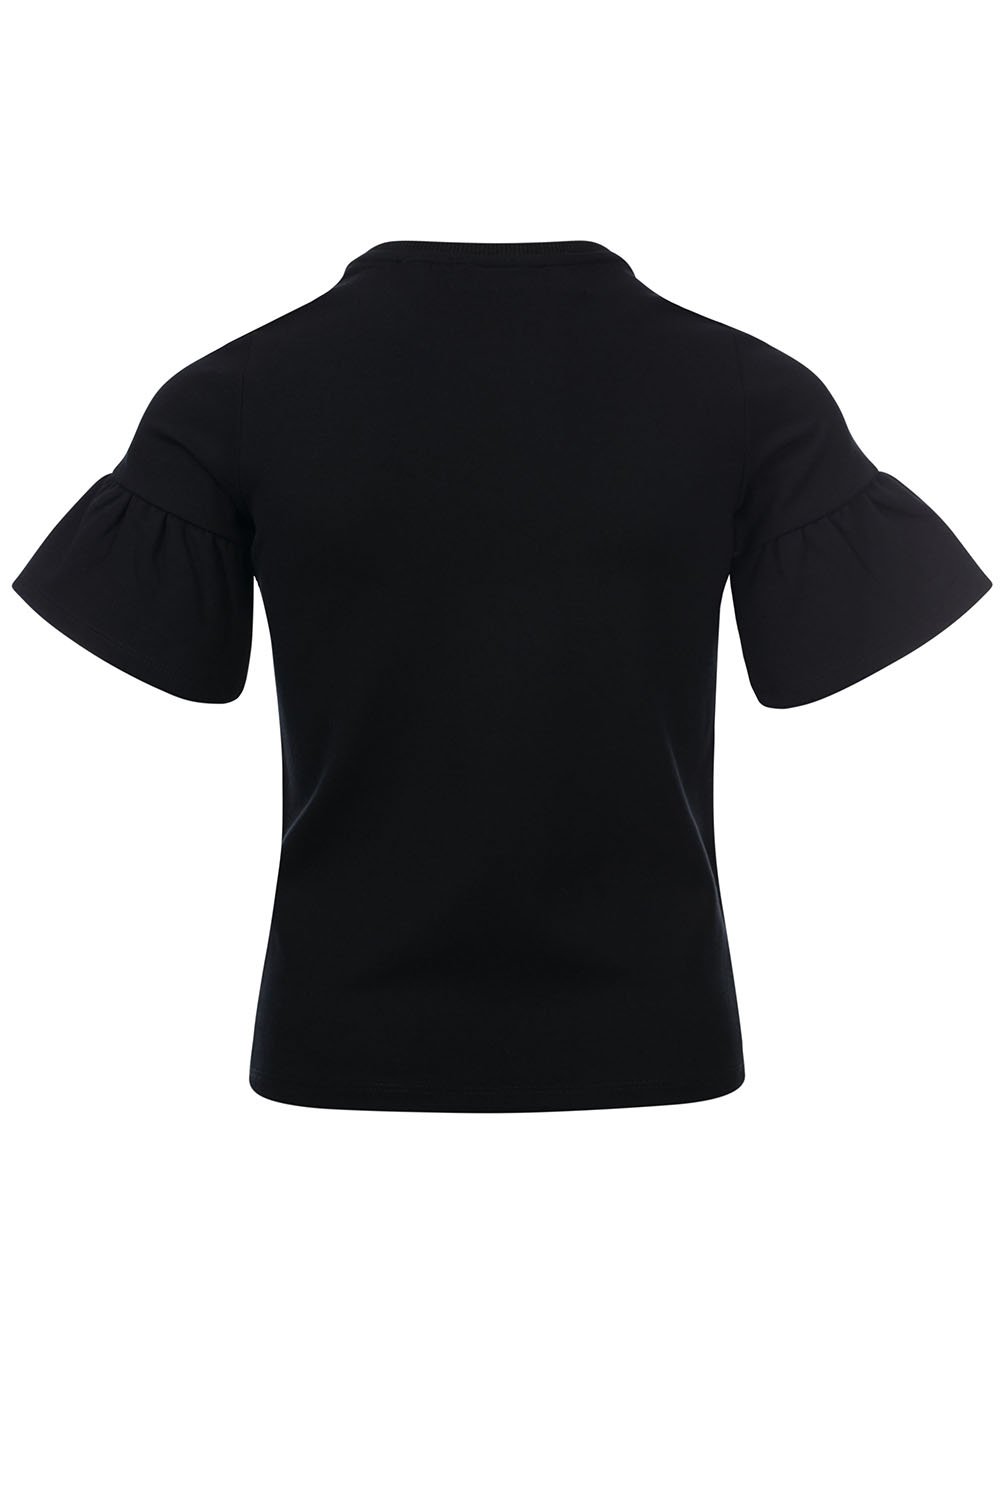 Meisjes 10Sixteen fancy T-shirt van LOOXS 10sixteen in de kleur black in maat 176.